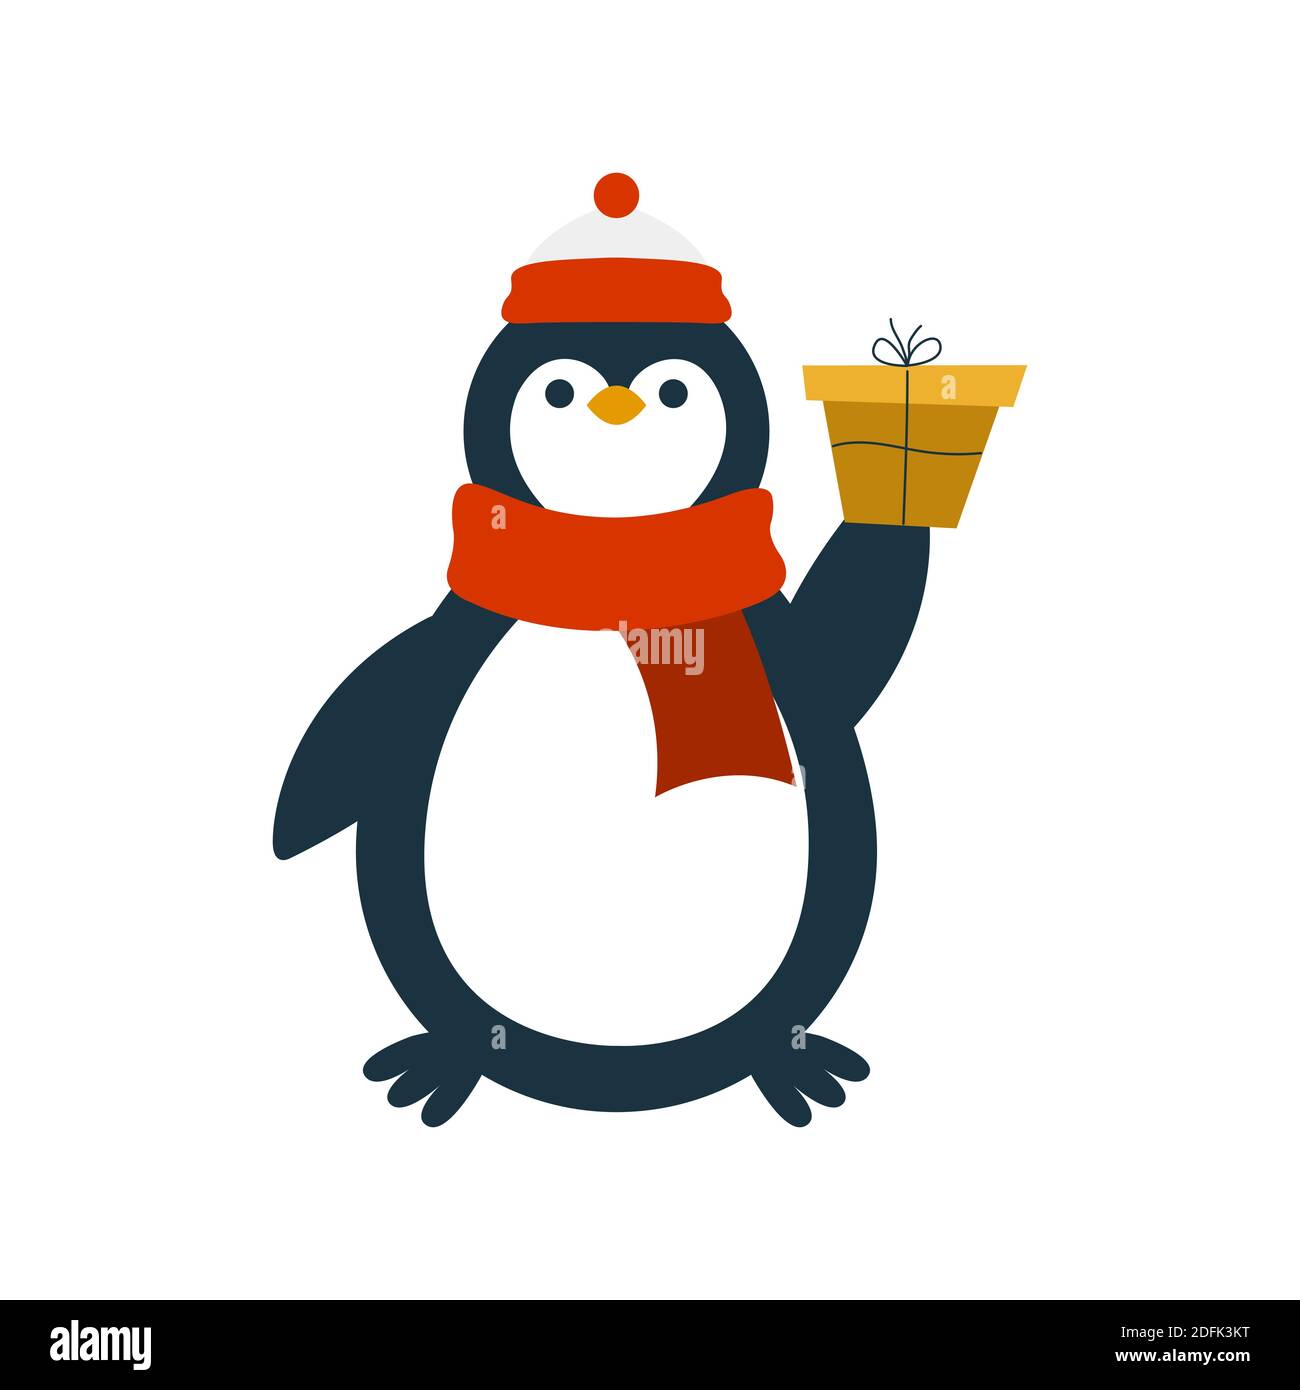 https://c8.alamy.com/compde/2dfk3kt/pinguin-charakter-mit-geschenk-isoliert-auf-weissem-hintergrund-kann-fur-weihnachtskarte-aufkleber-poster-etc-verwendet-werden-2dfk3kt.jpg